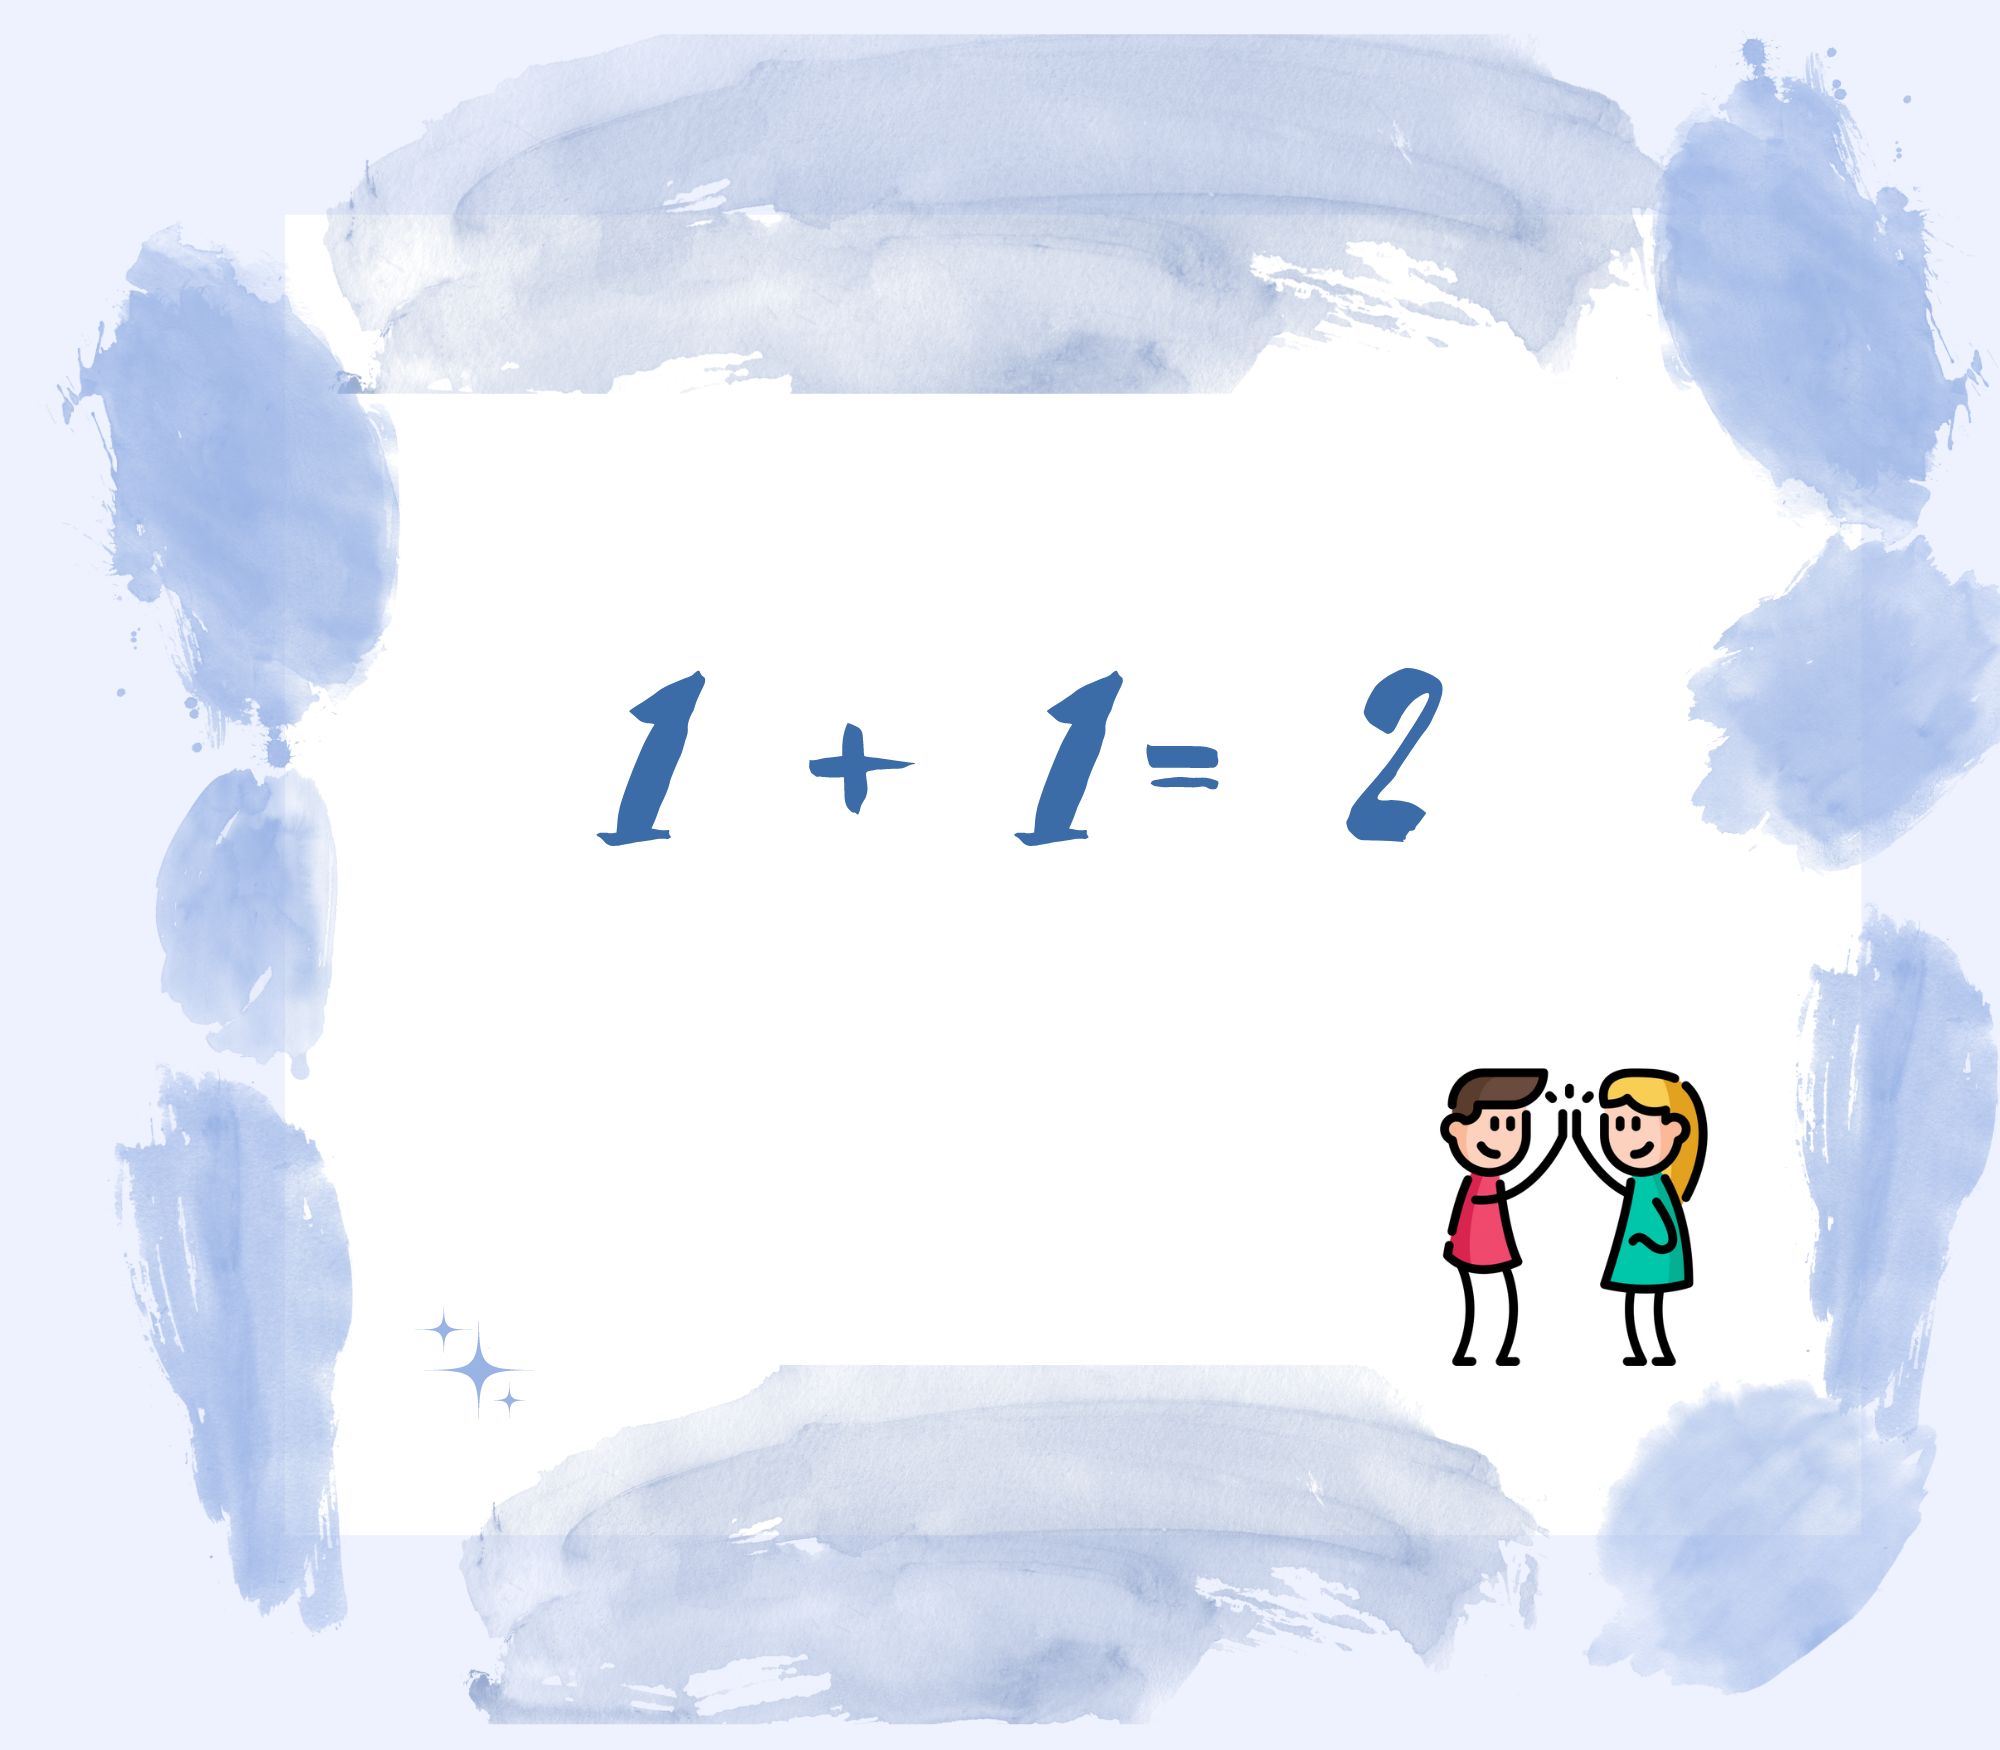 La imagen muestra una operación matemática muy simple y una ilustración de un chico y una chica que chocan la mano en señal de alegría o satisfacción.